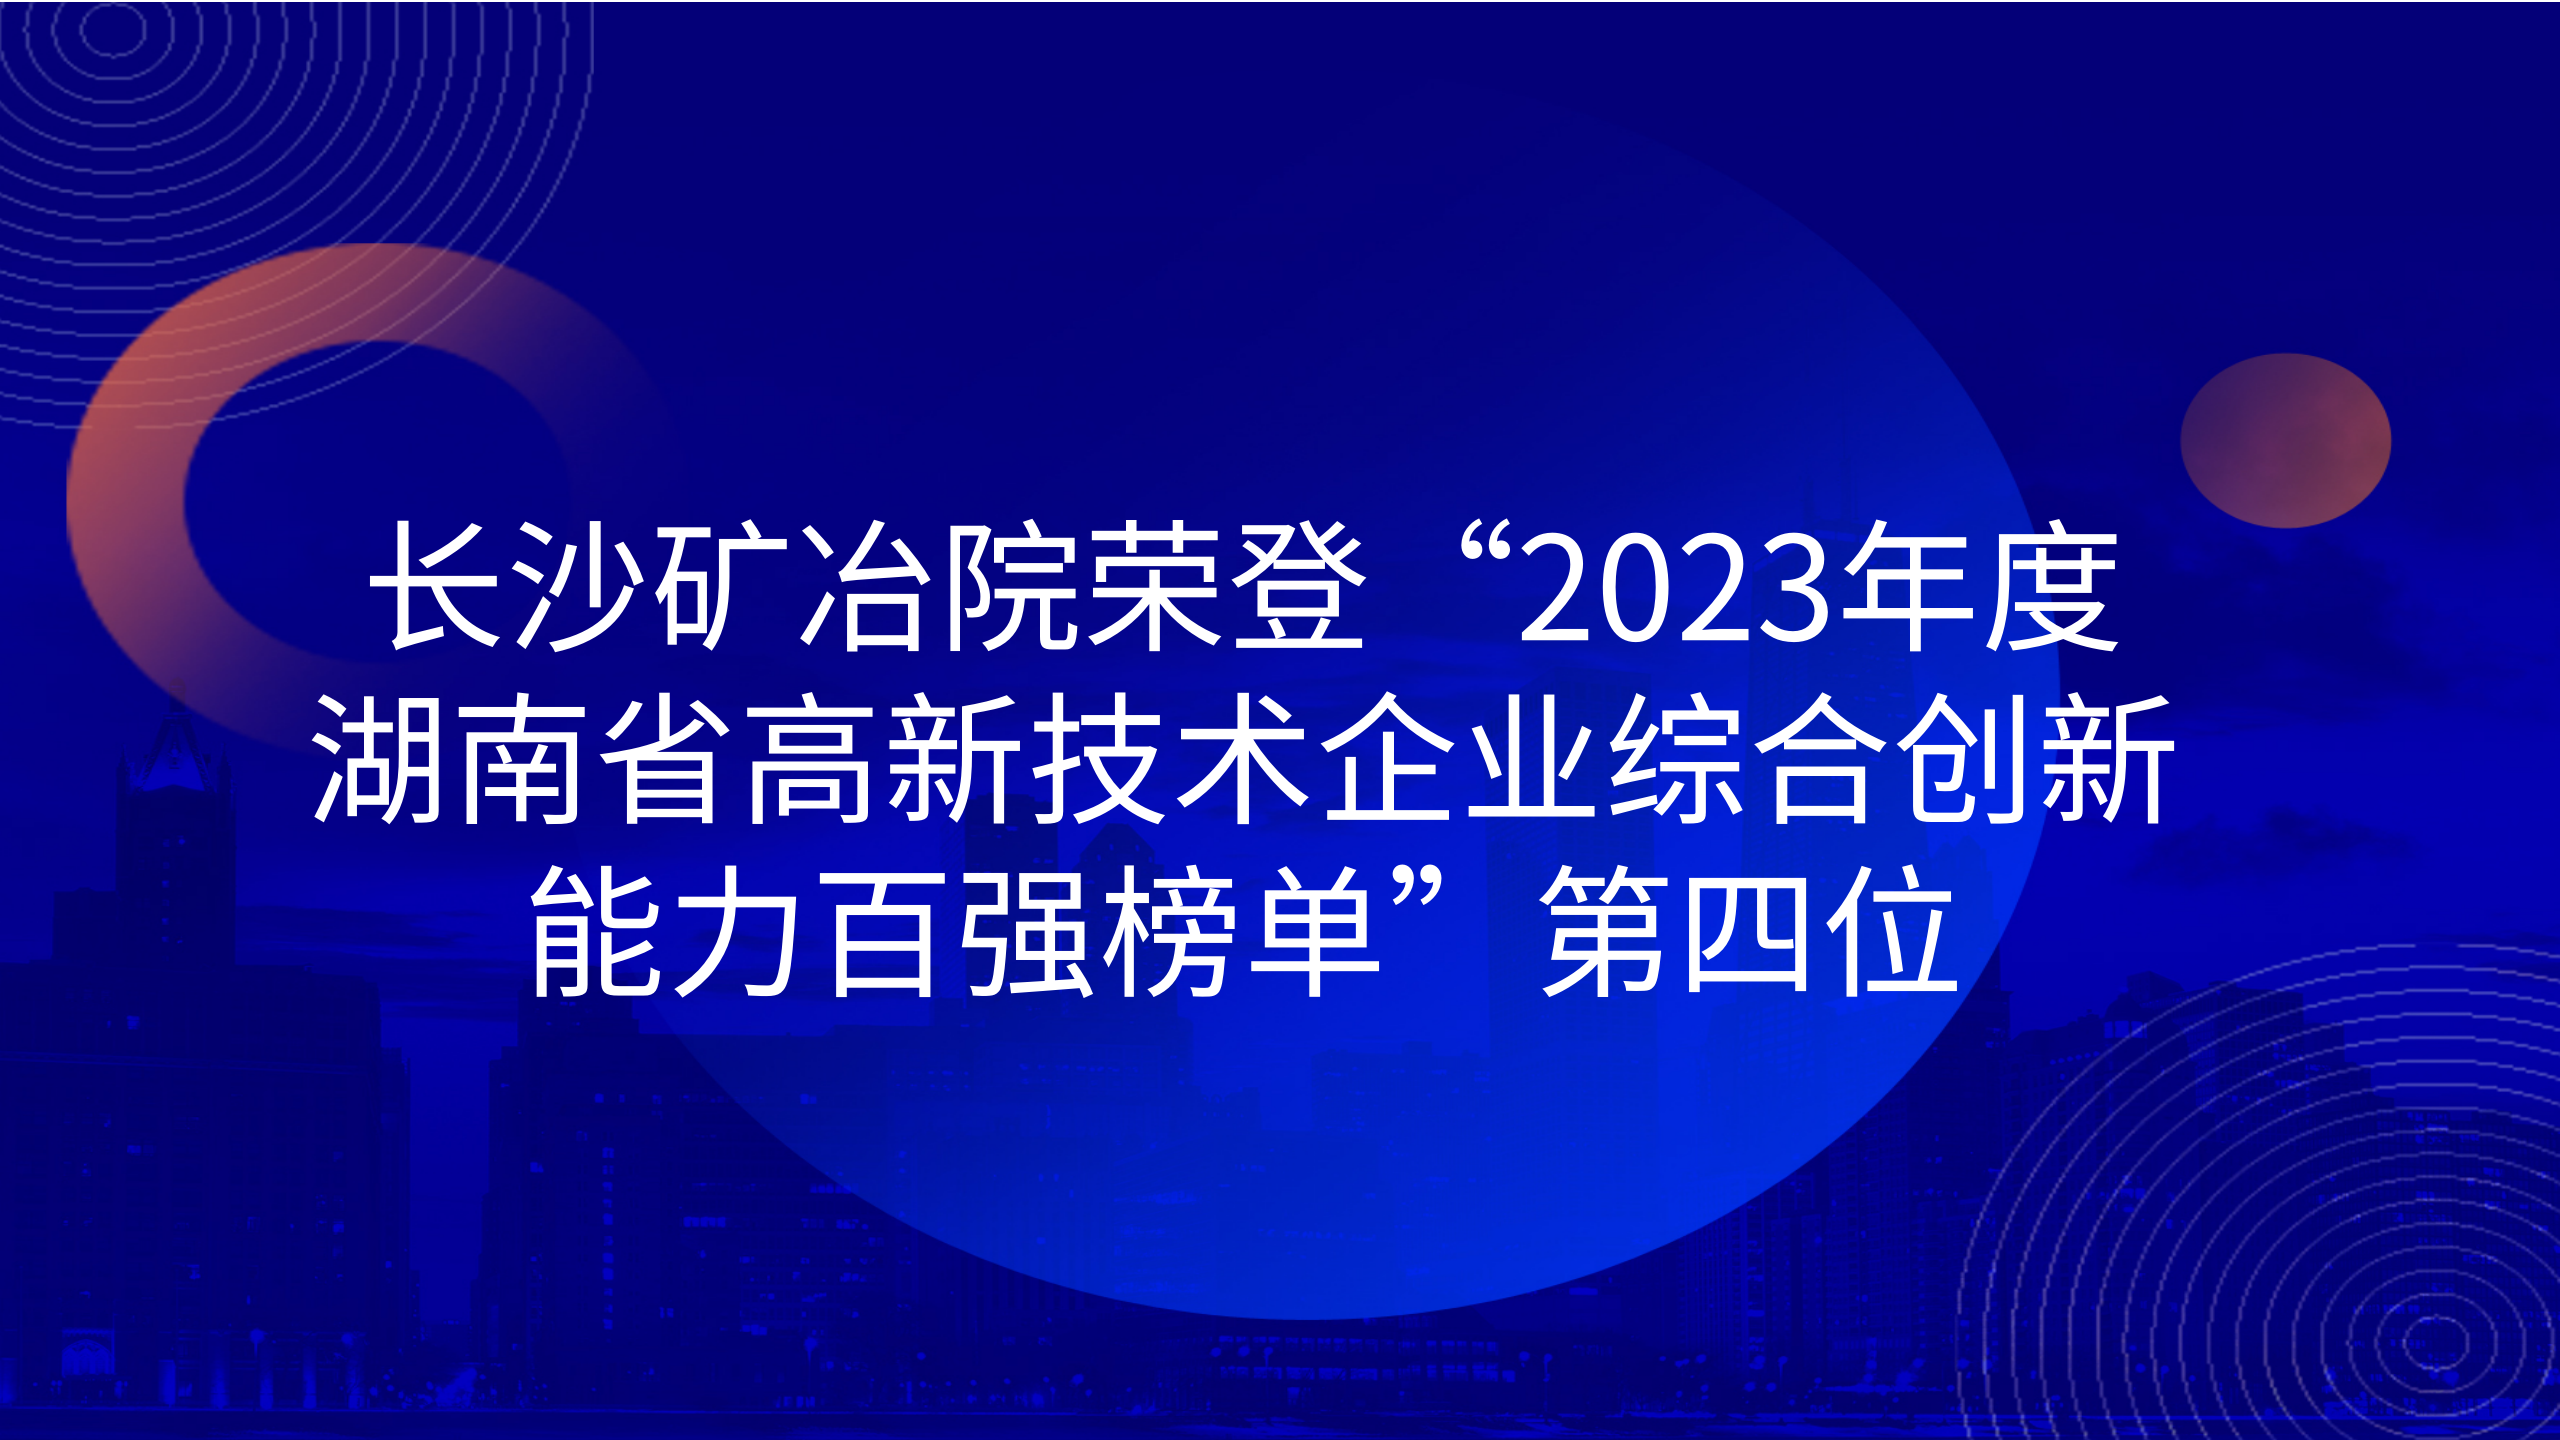 长沙矿冶院荣登“2023年度湖南省高新技术企业综合创新能力百强榜单”第四位